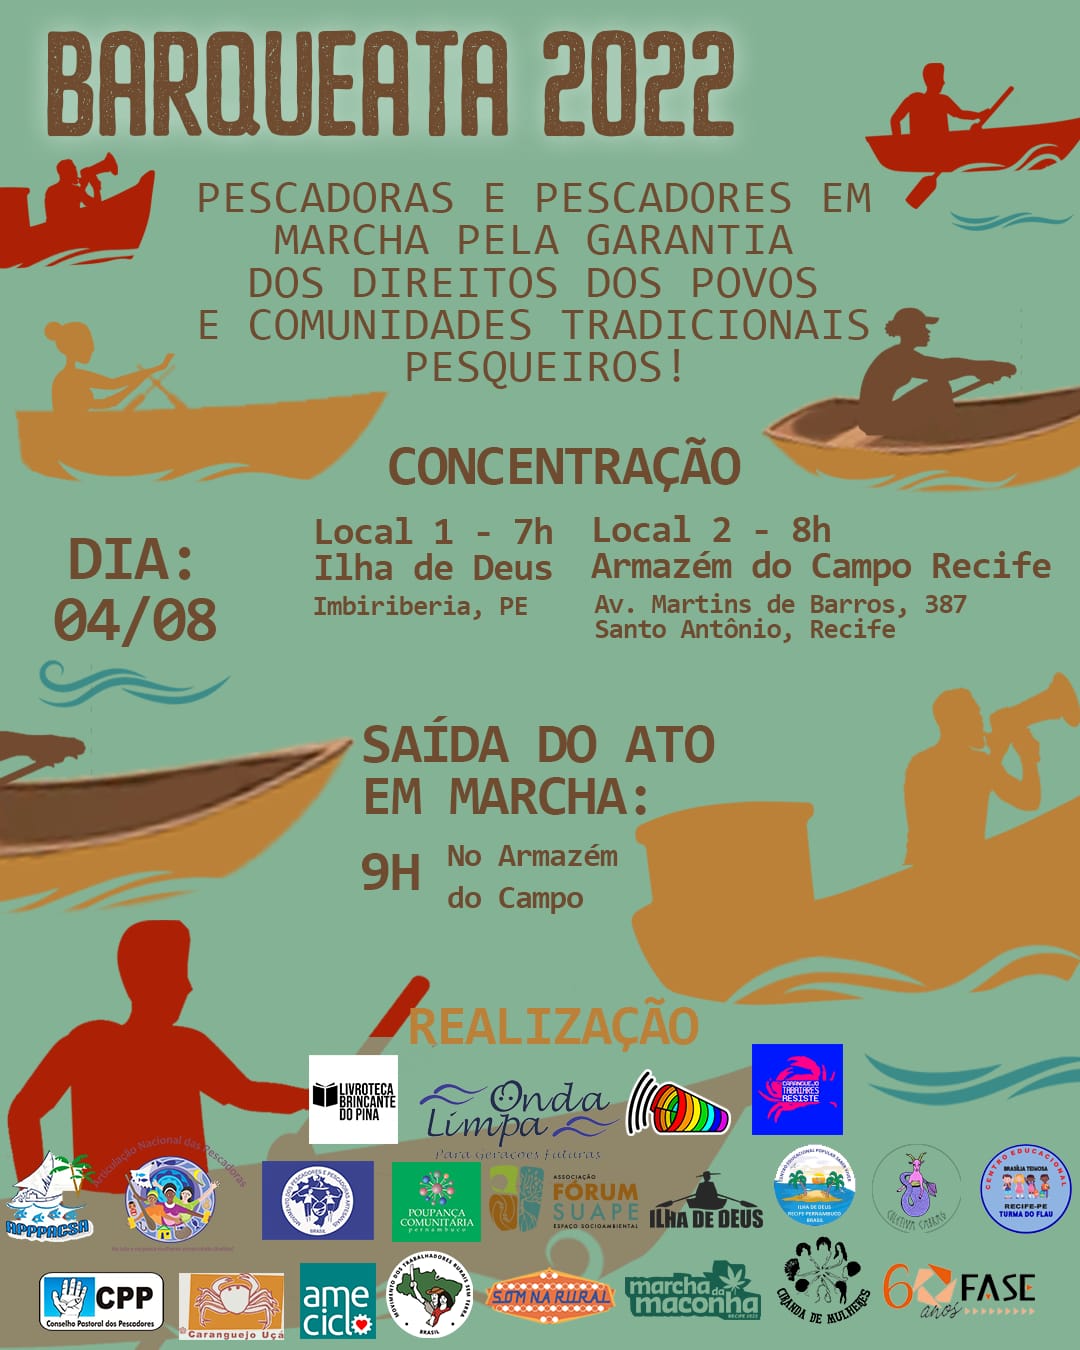 Pernambuco: Barqueata reúne pescadores(as) em defesa das comunidades pesqueiras